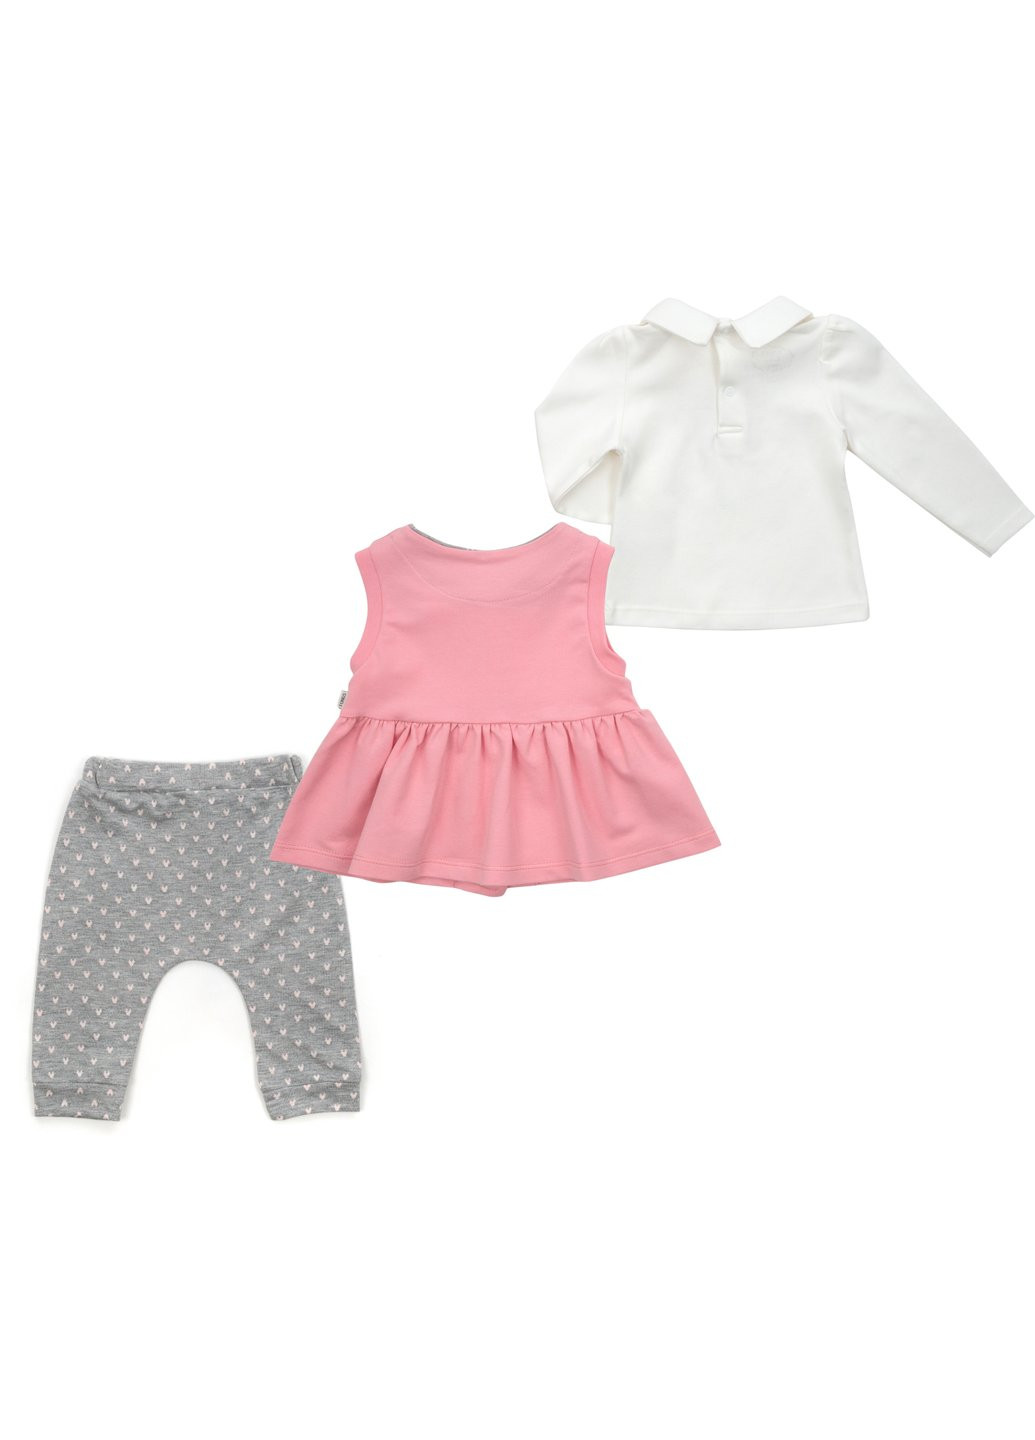 Комбинированный демисезонный набор детской одежды с бантиками (2624-68g-pink) Tongs